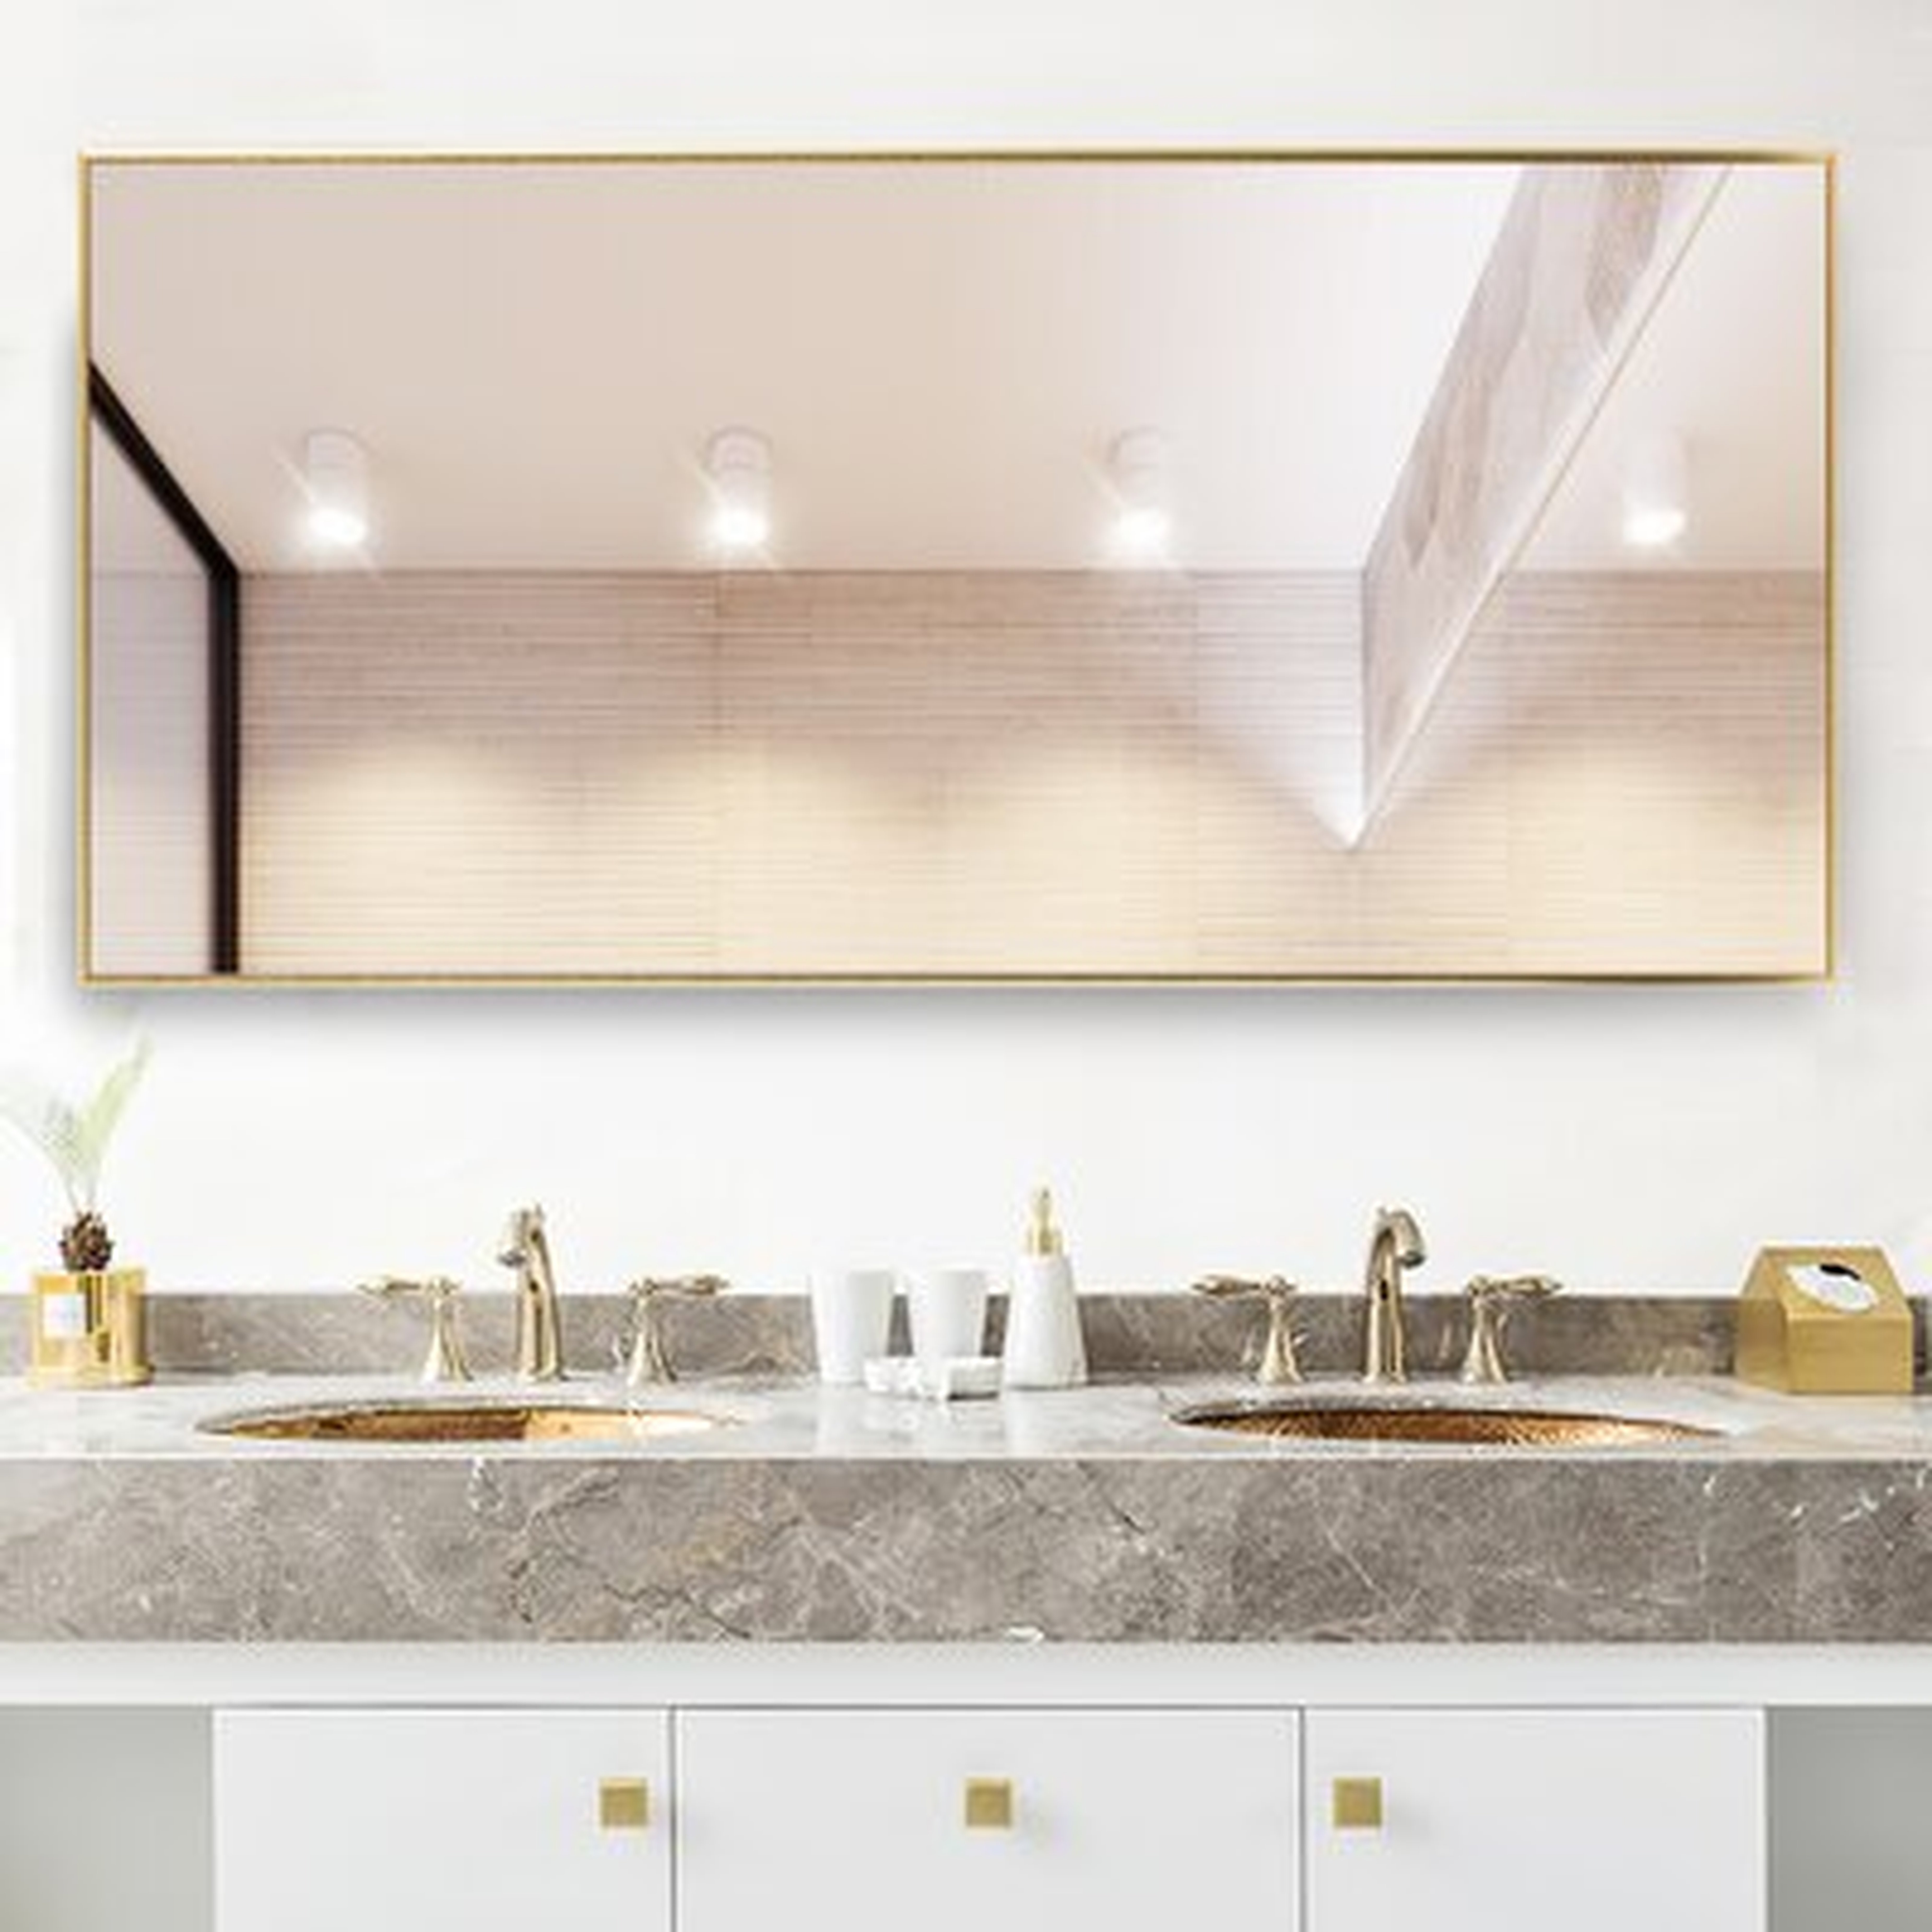 Sneller Glam Bathroom / Vanity Mirror - Wayfair